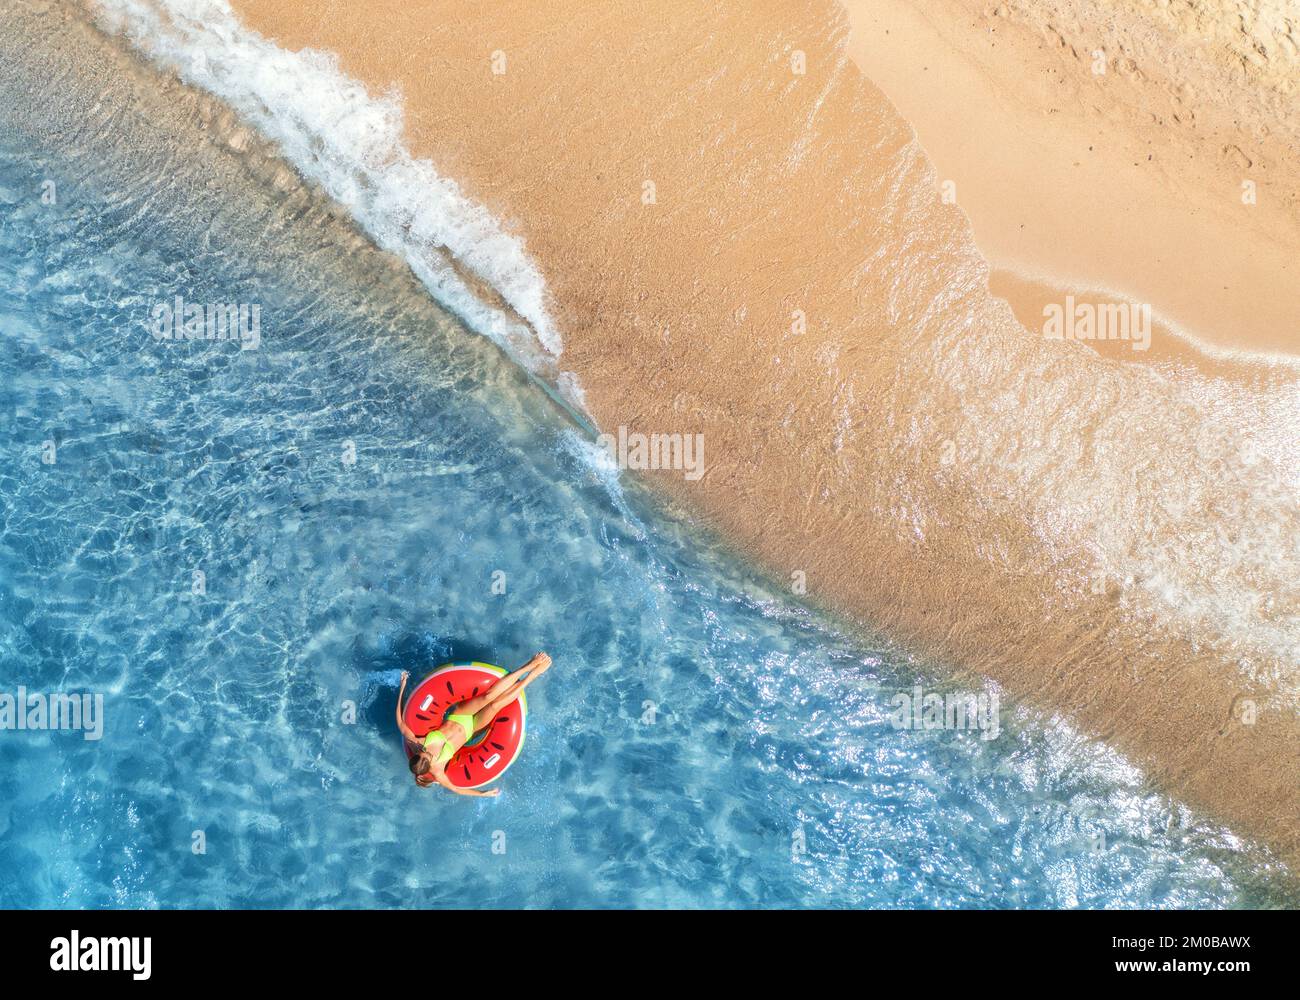 Vista aérea de una joven nadando con un anillo rojo en el mar azul con olas al atardecer en verano. Paisaje tropical con niña, agua clara, arena Foto de stock